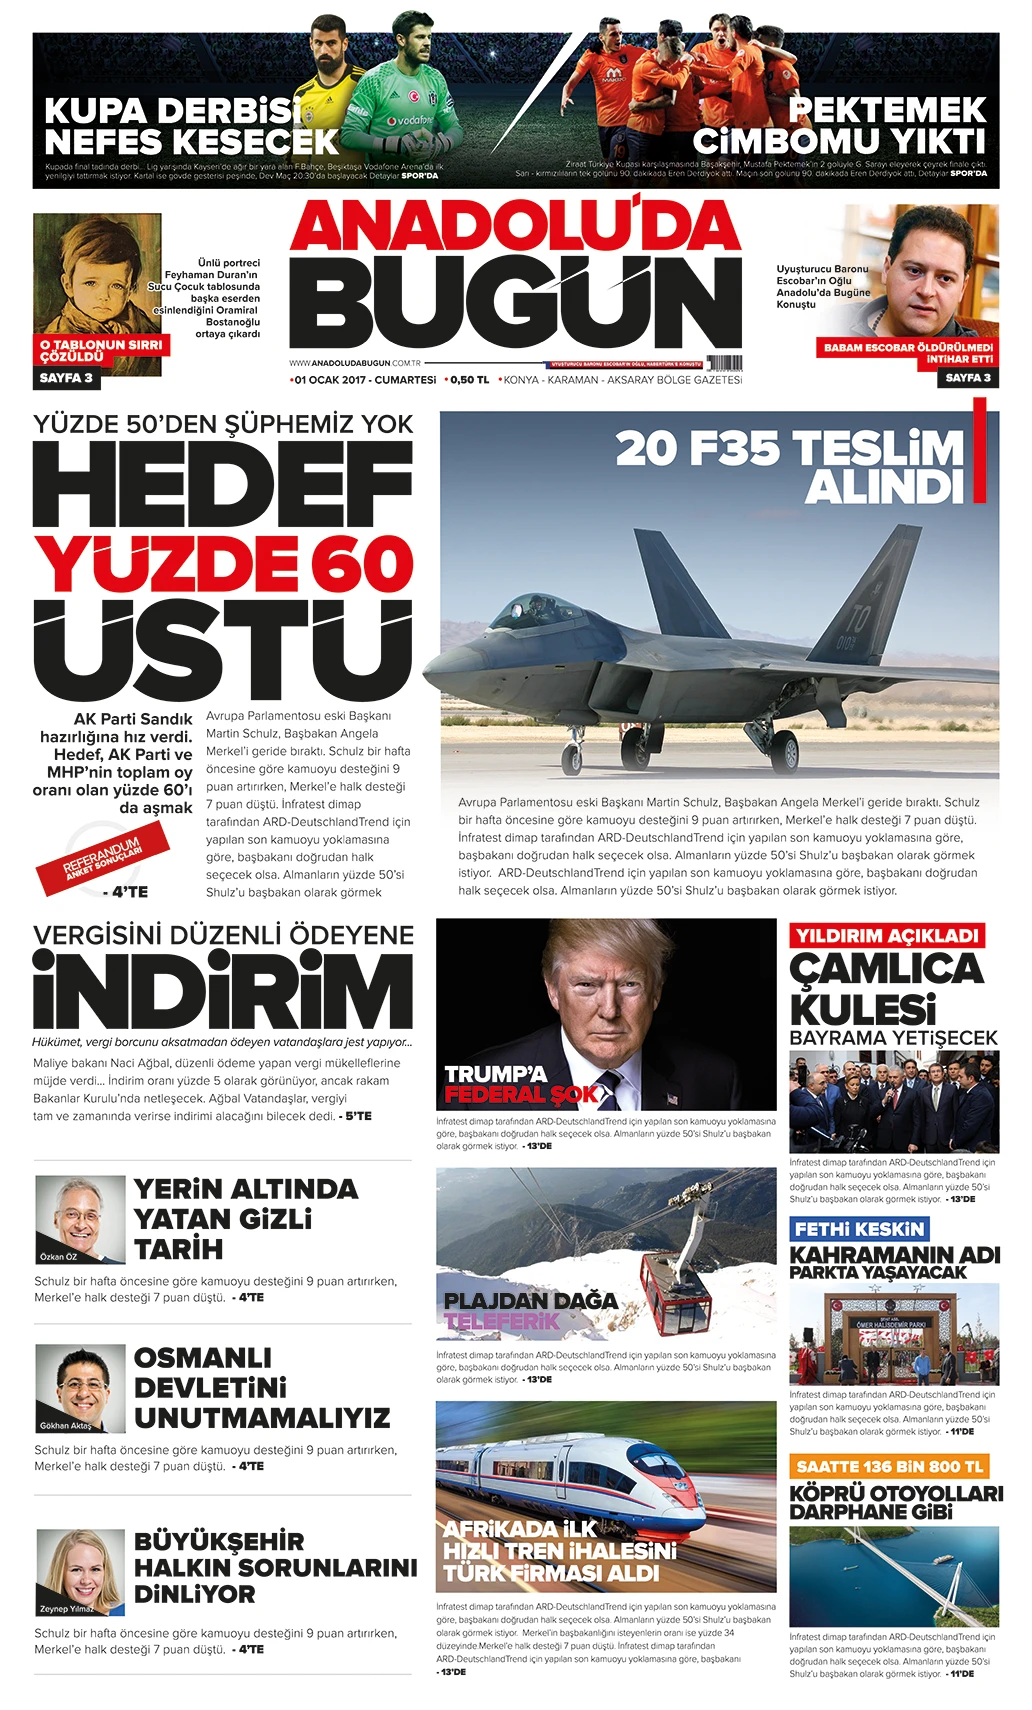 Anadolu'da Bugün Gazete Mizanpaj Tasarımı ve Logo Kullanımı